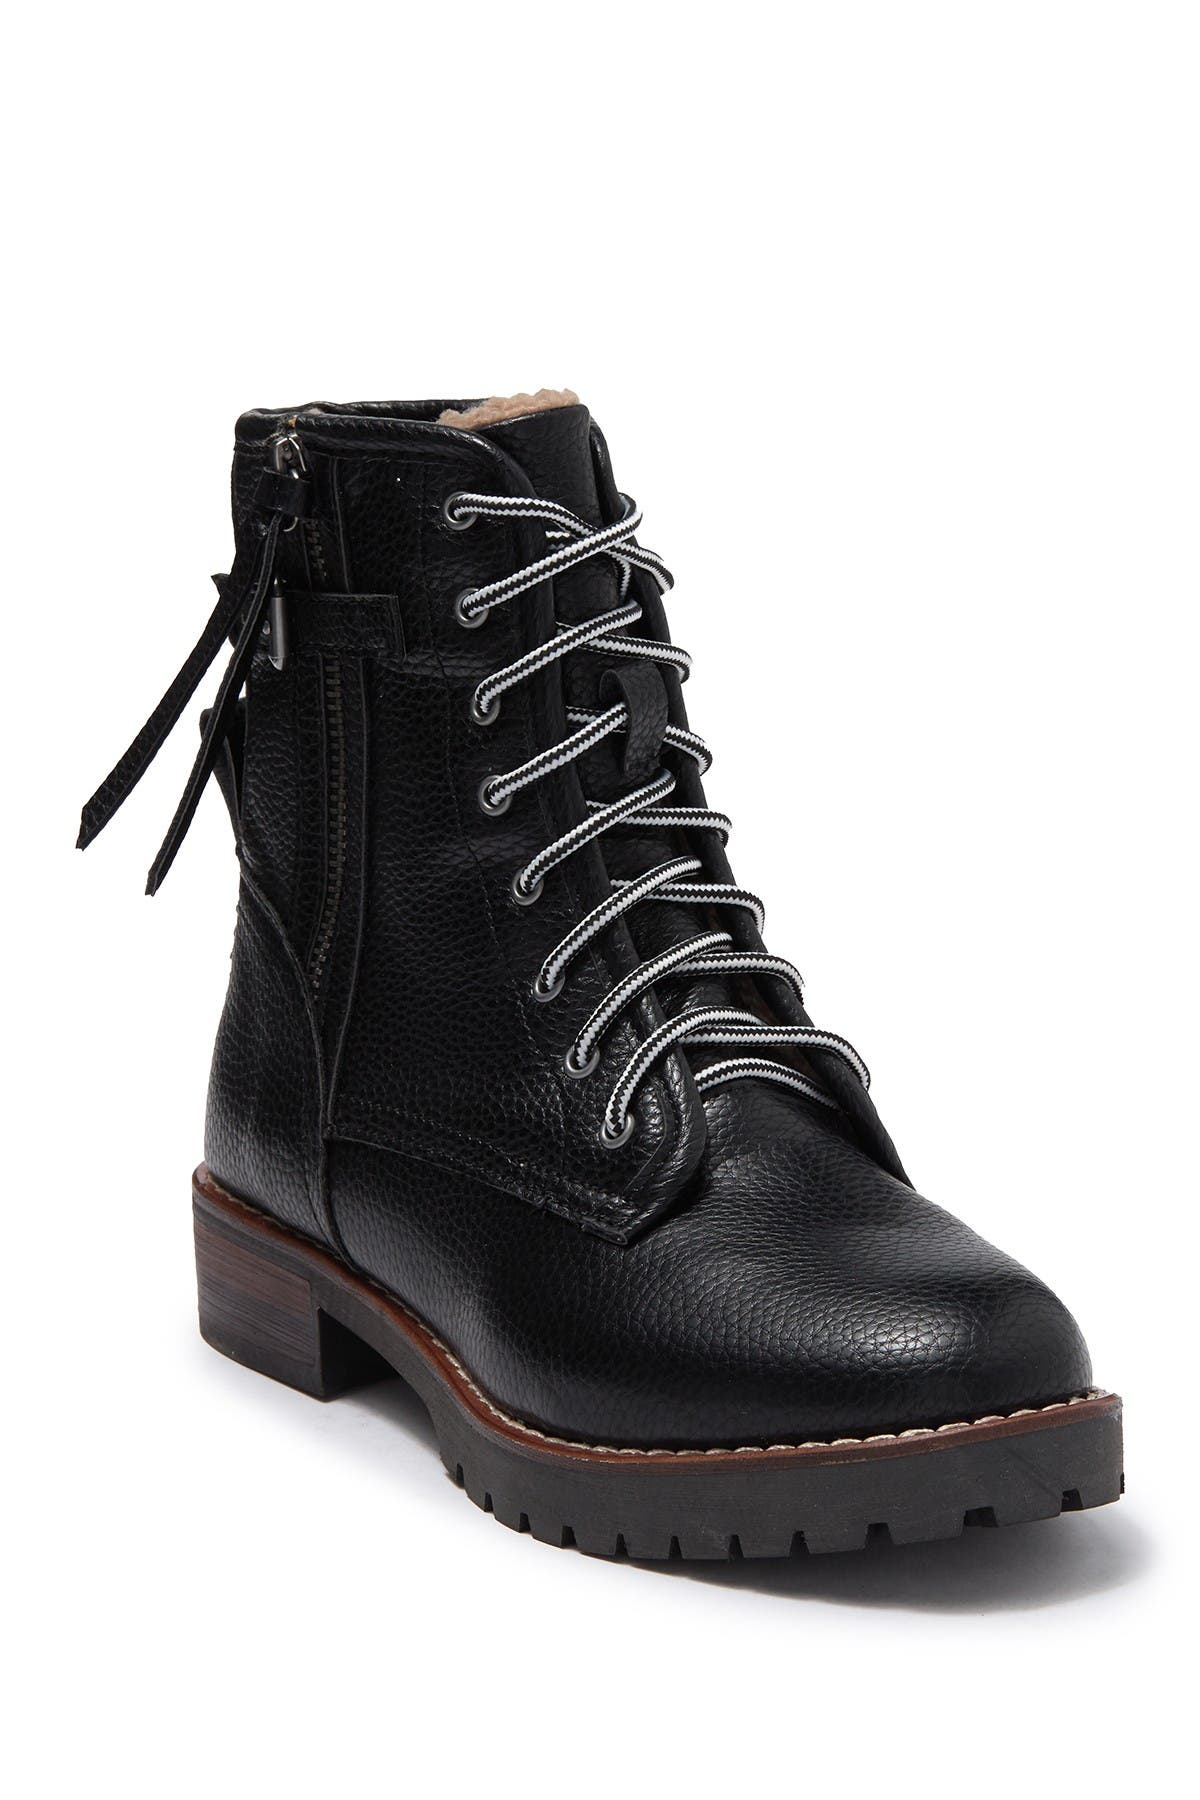 kensie black boots